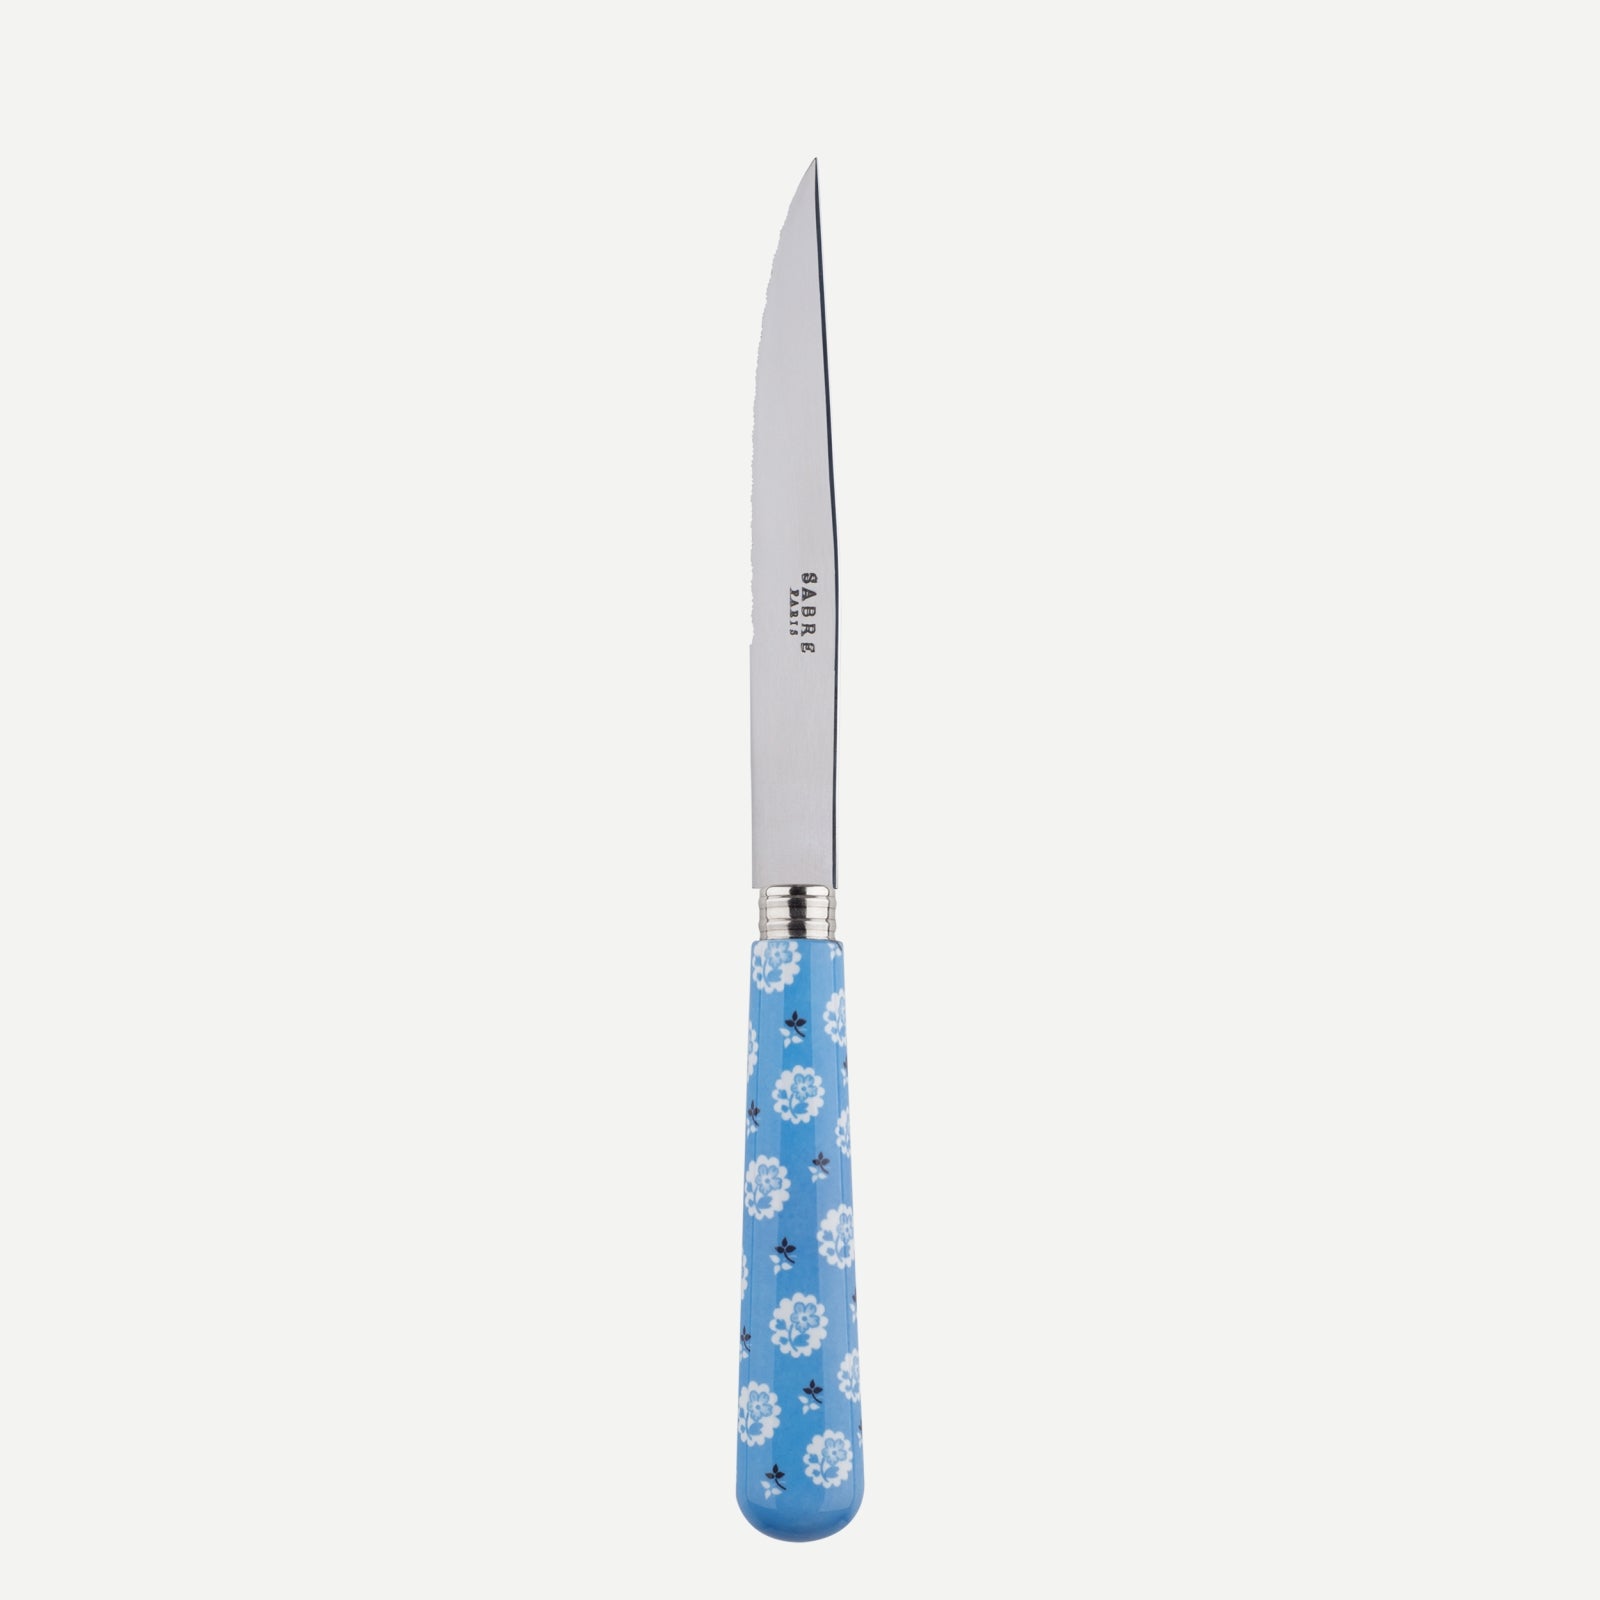 Steack knife - Provencal - Light blue